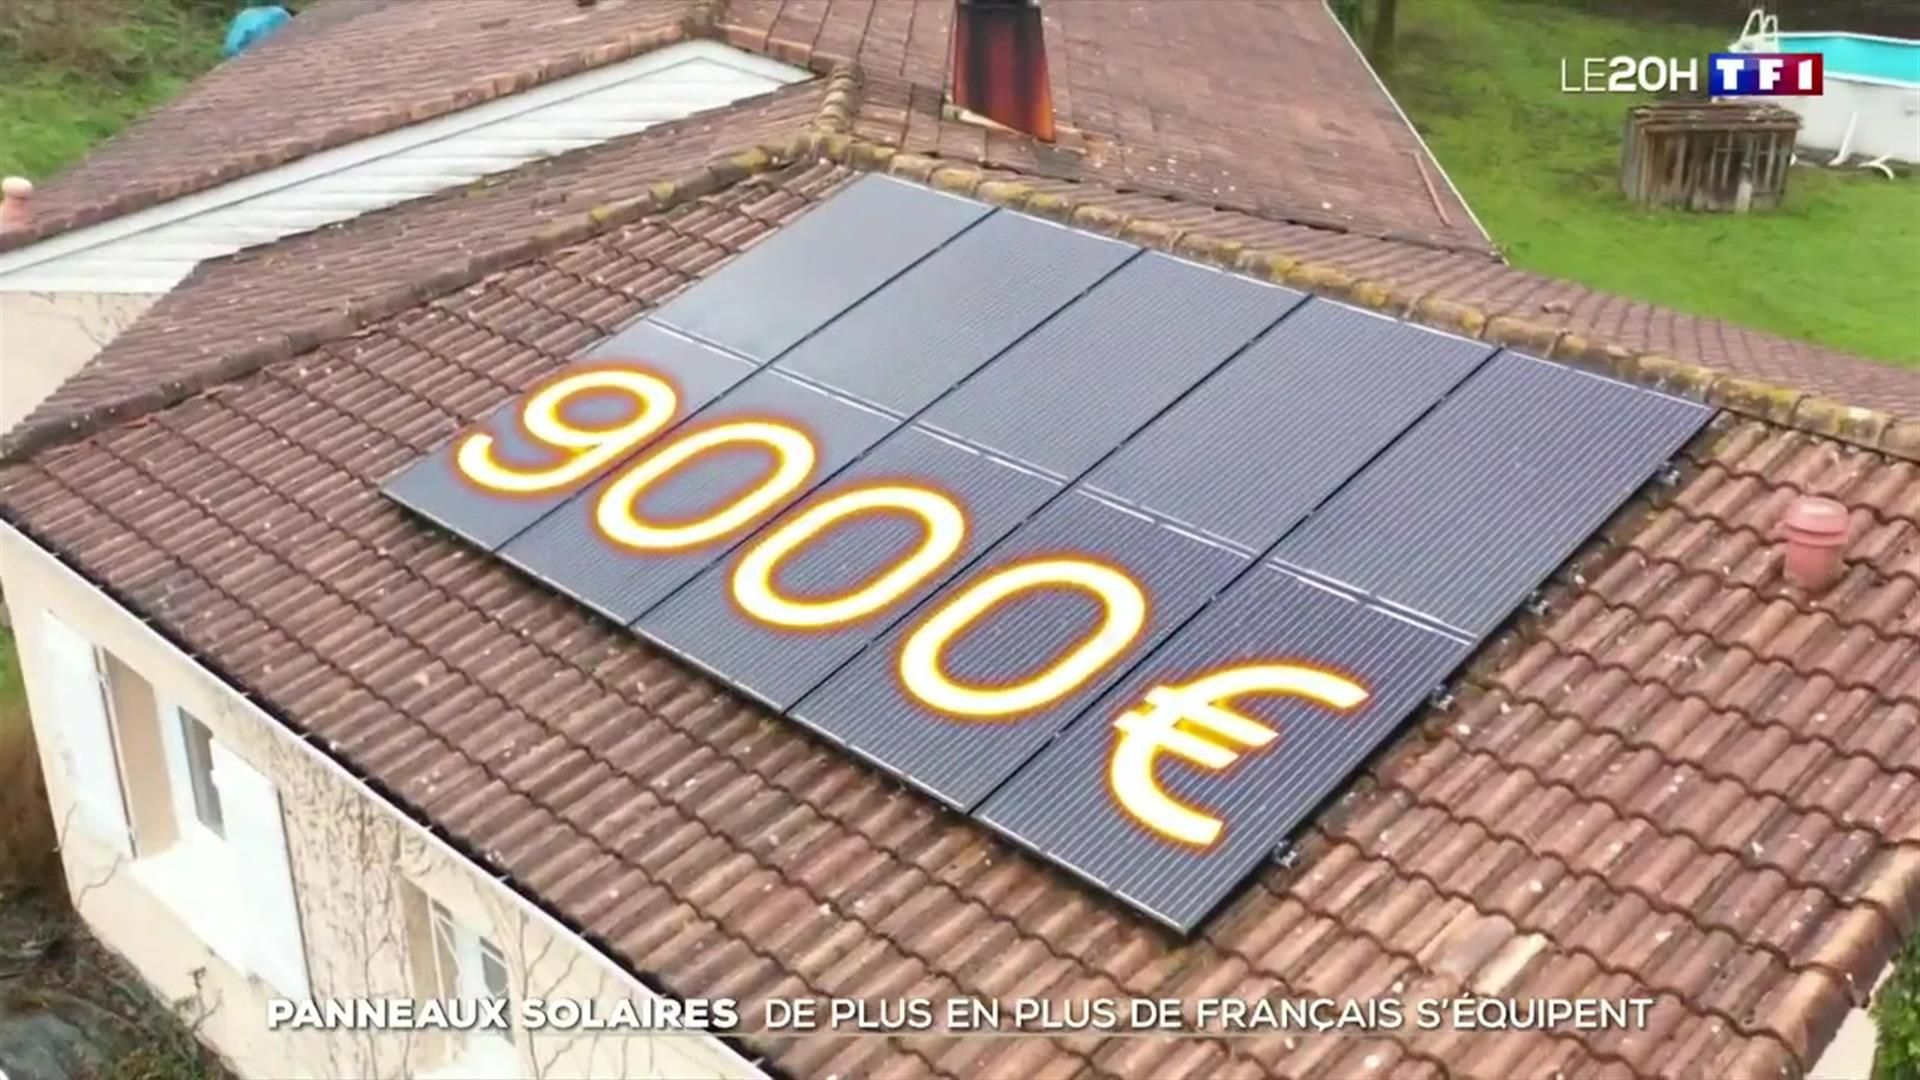 REPORTAGE - De plus en plus de Français s'équipent de panneaux solaires